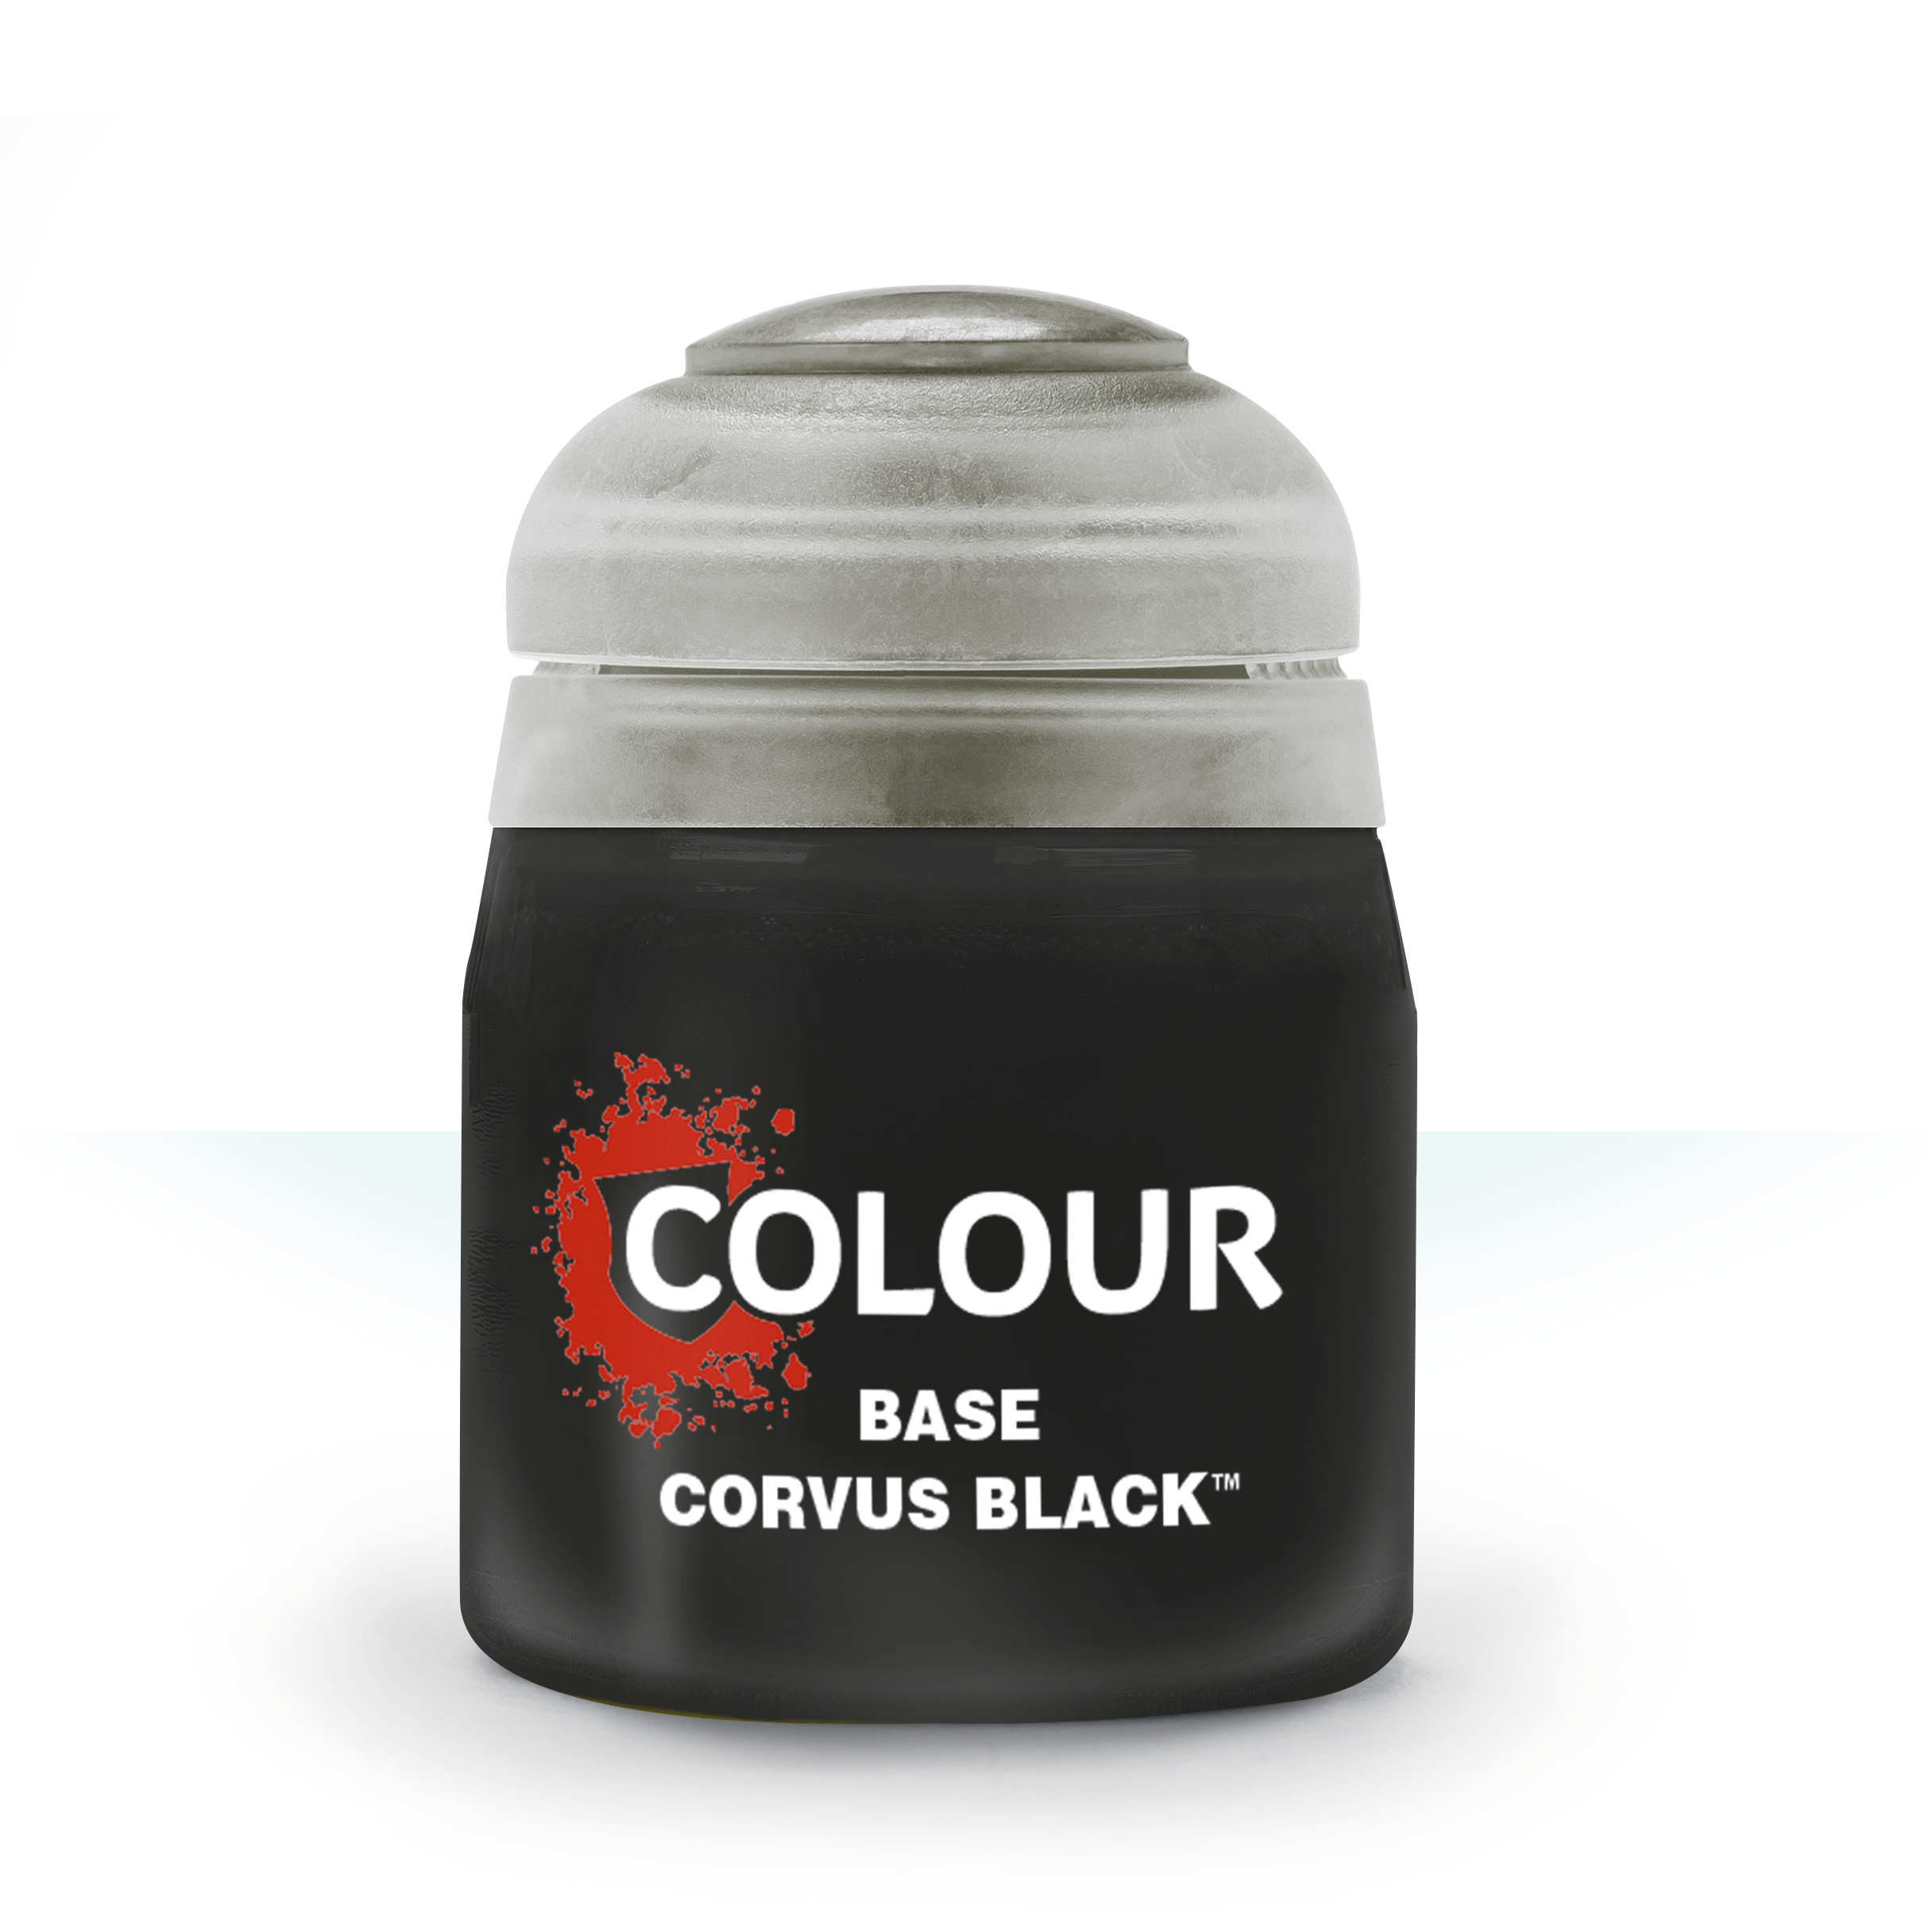 Base Corvus Black - Citadel Colour